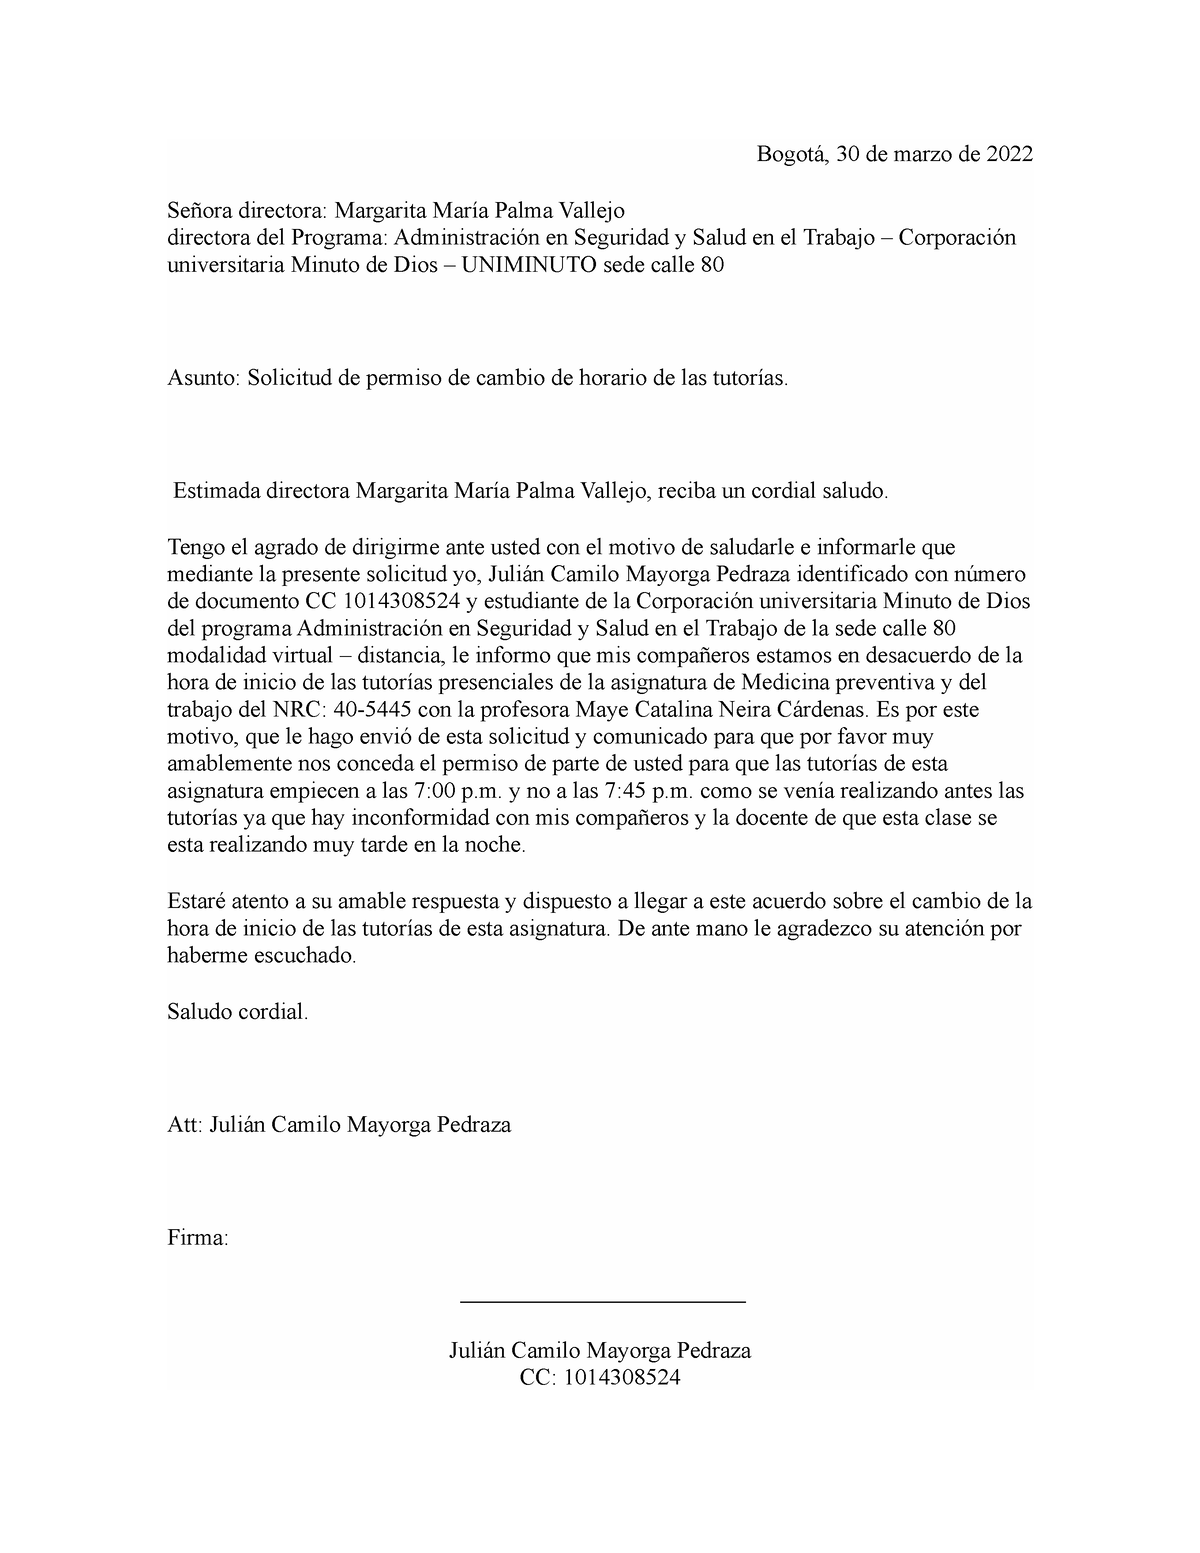 Carta de solicitud de permiso cambio de horario - Bogotá, 30 de marzo de  2022 Señora directora: - Studocu